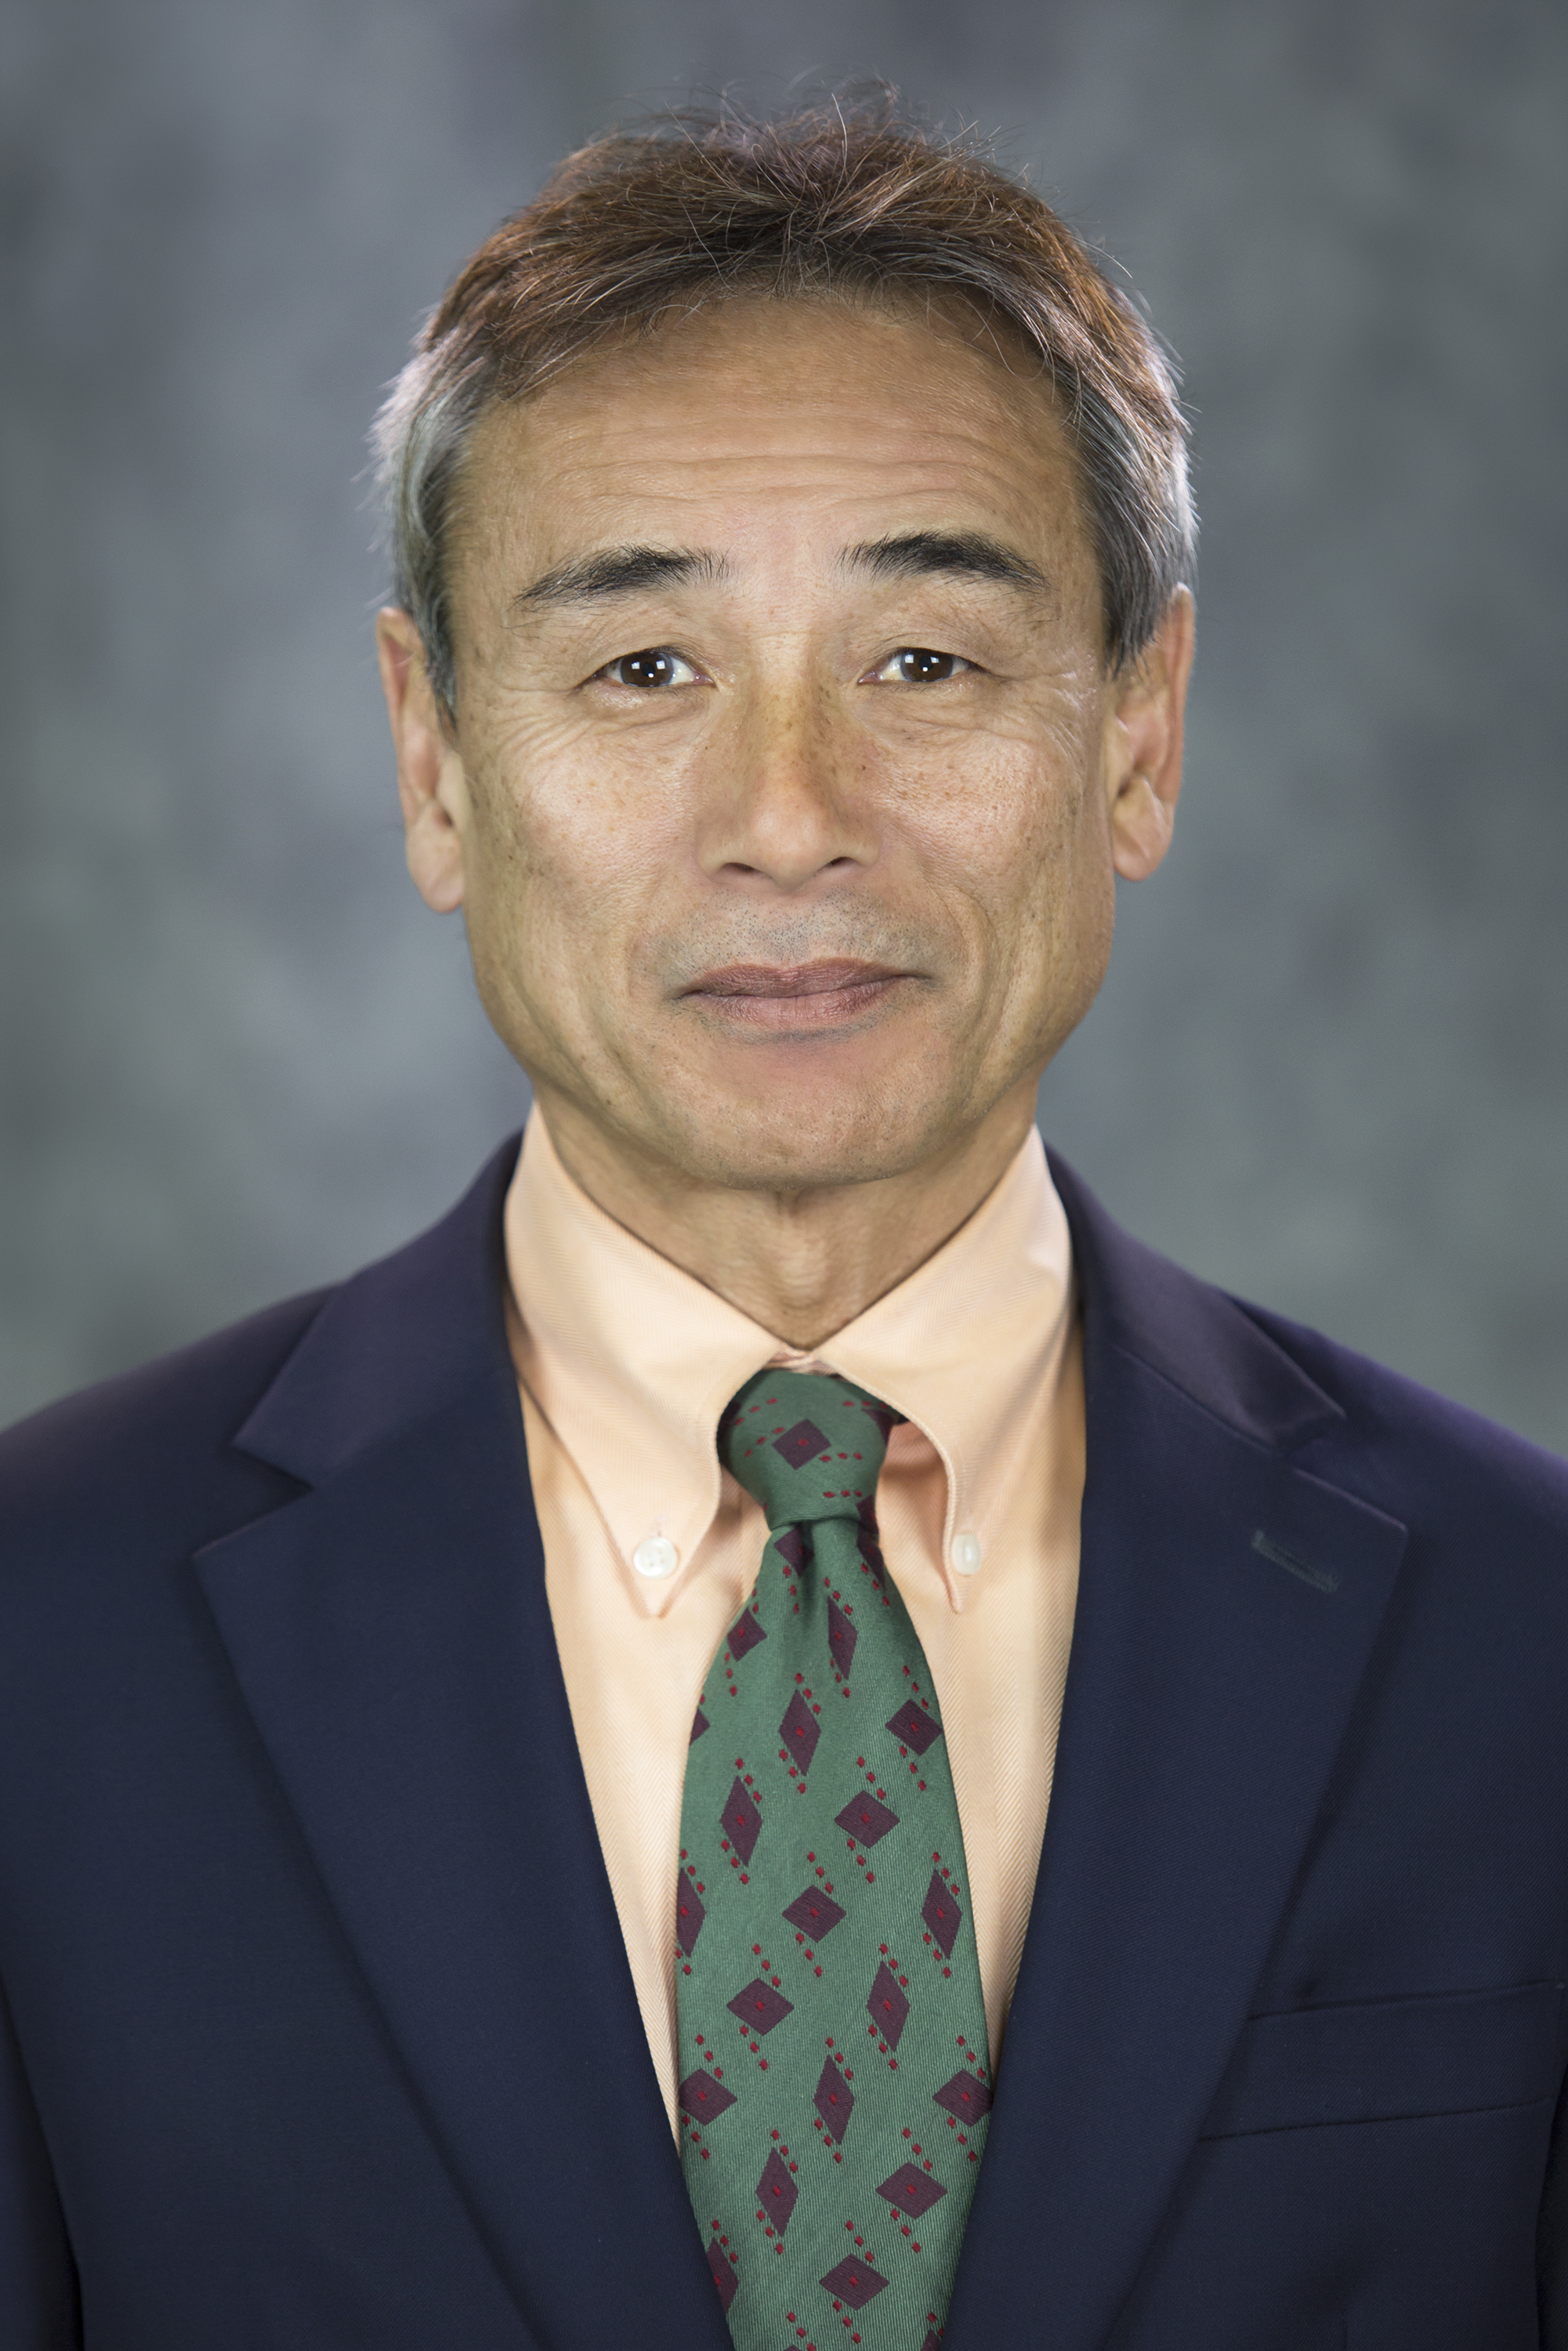 Yoshi Maekawa